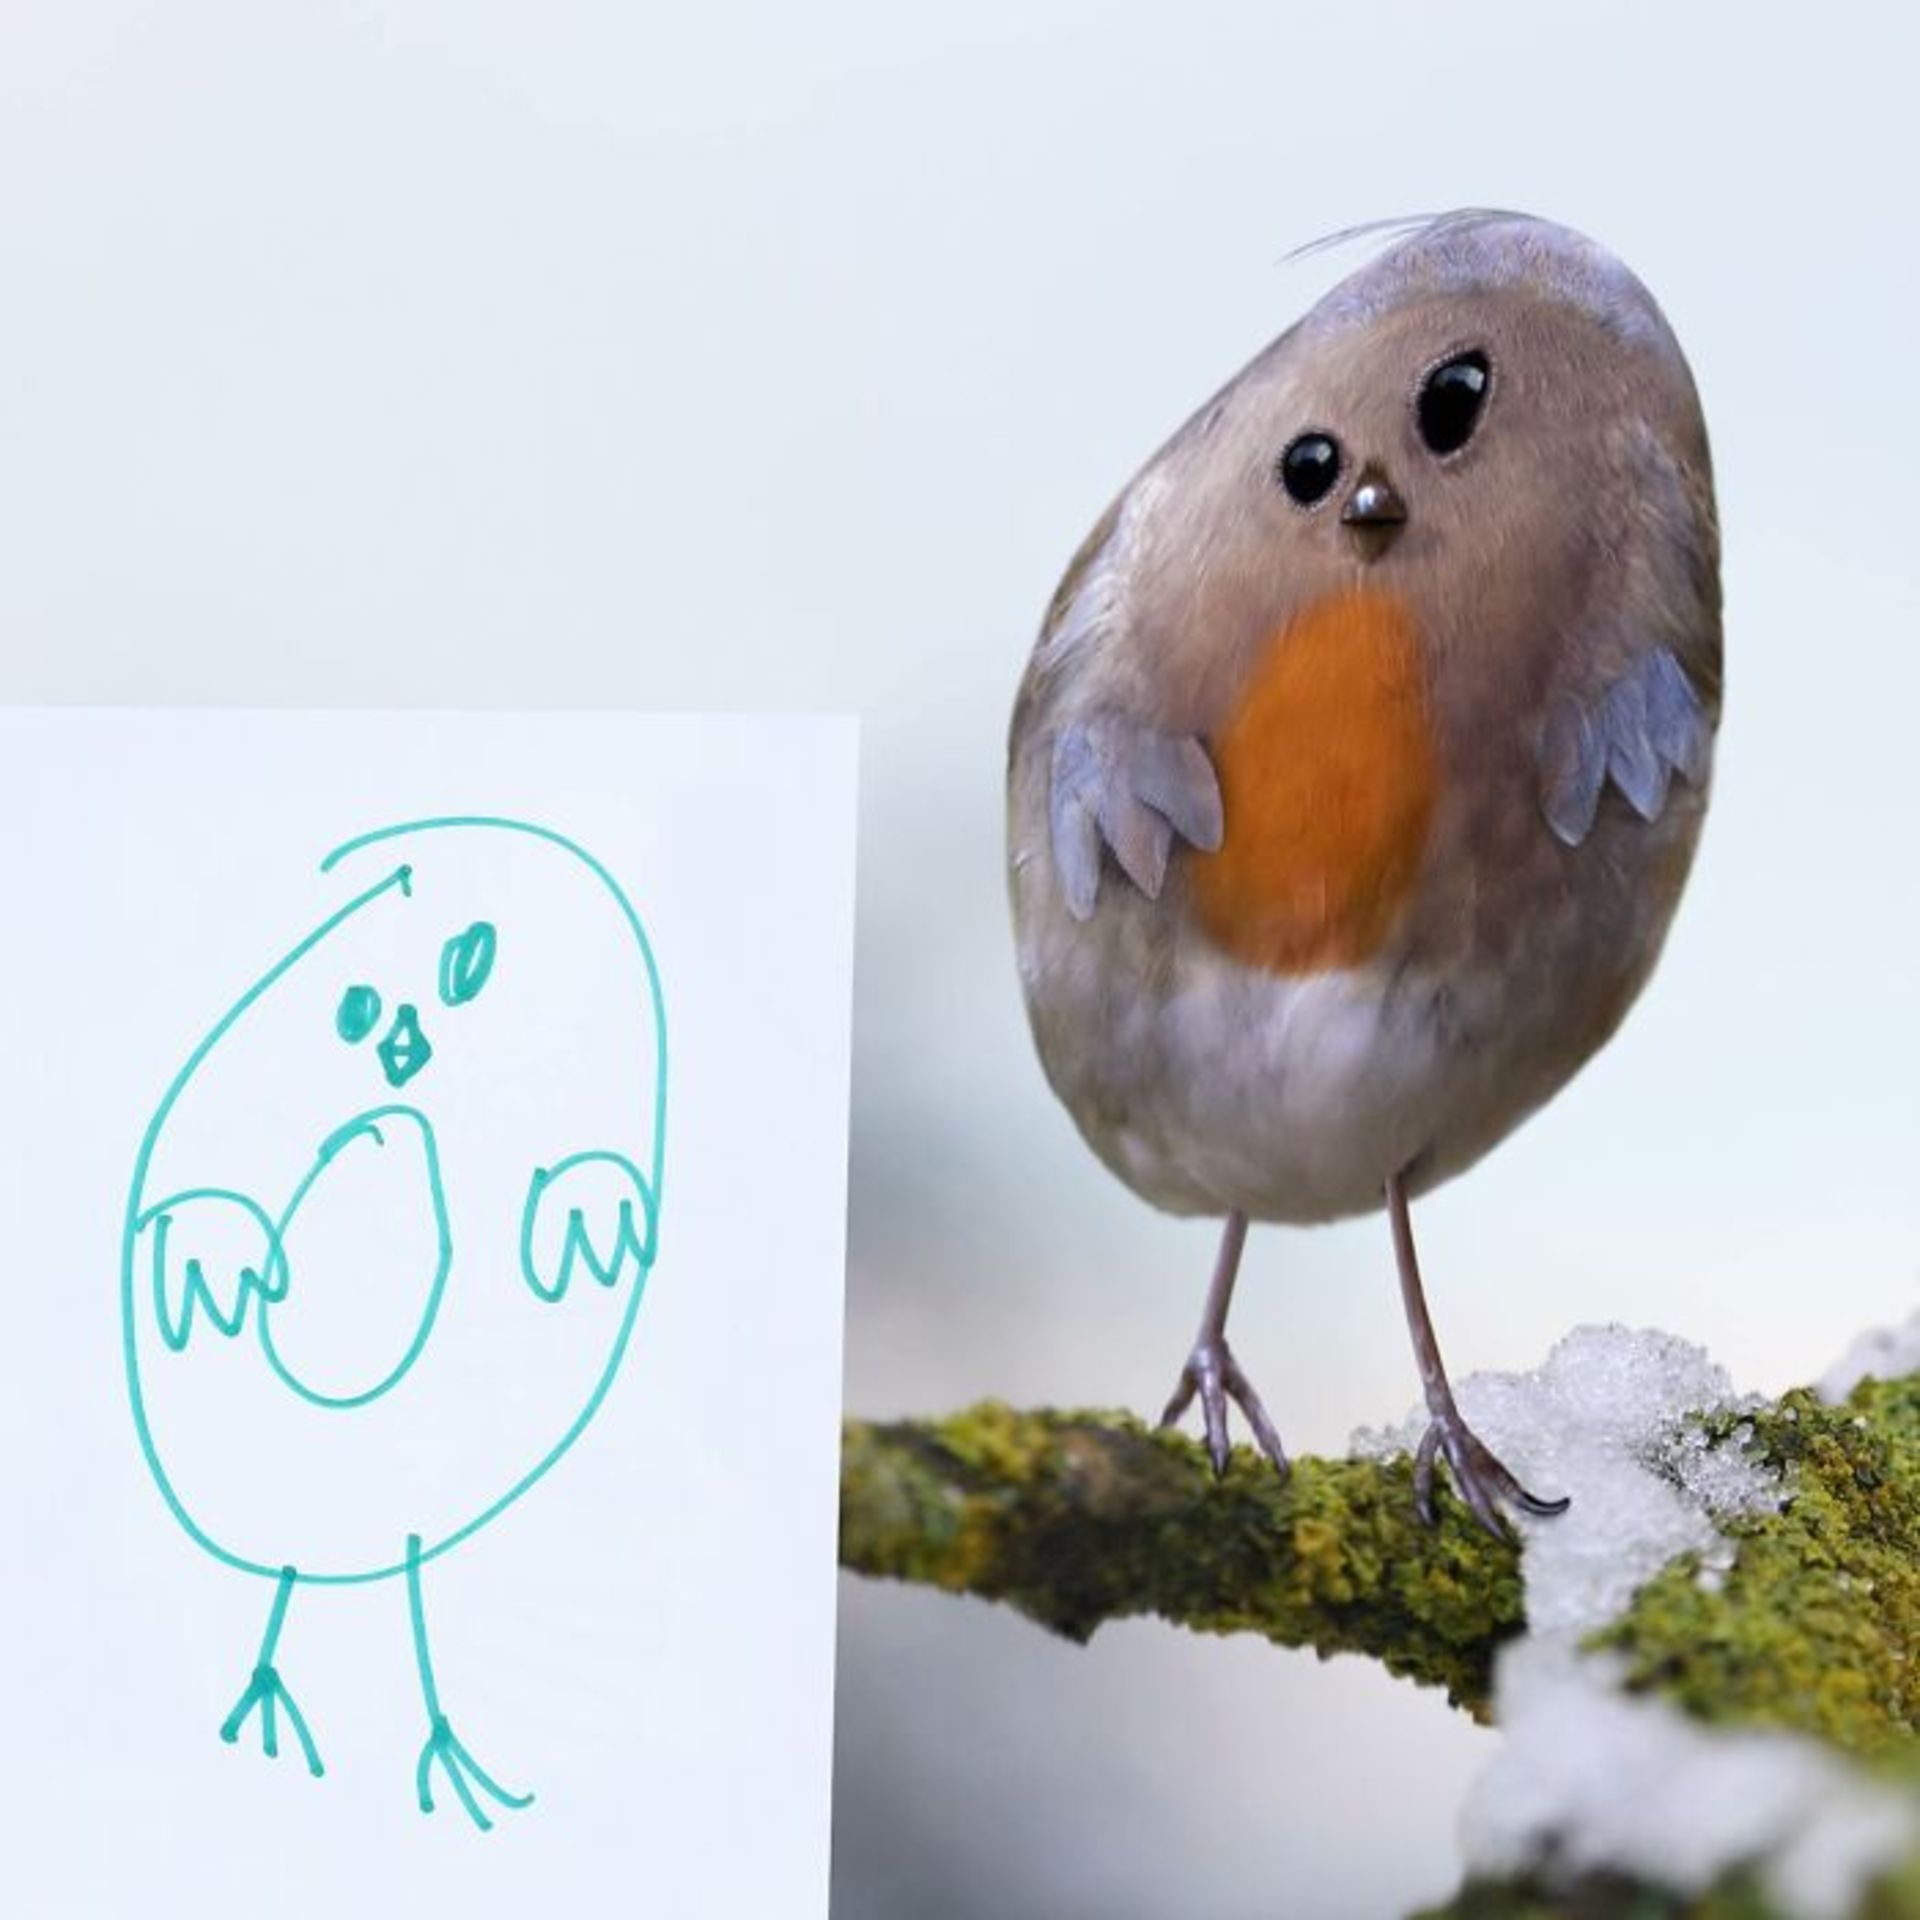 زنده کردن نقاشی کودکان با فتوشاپ - پرنده